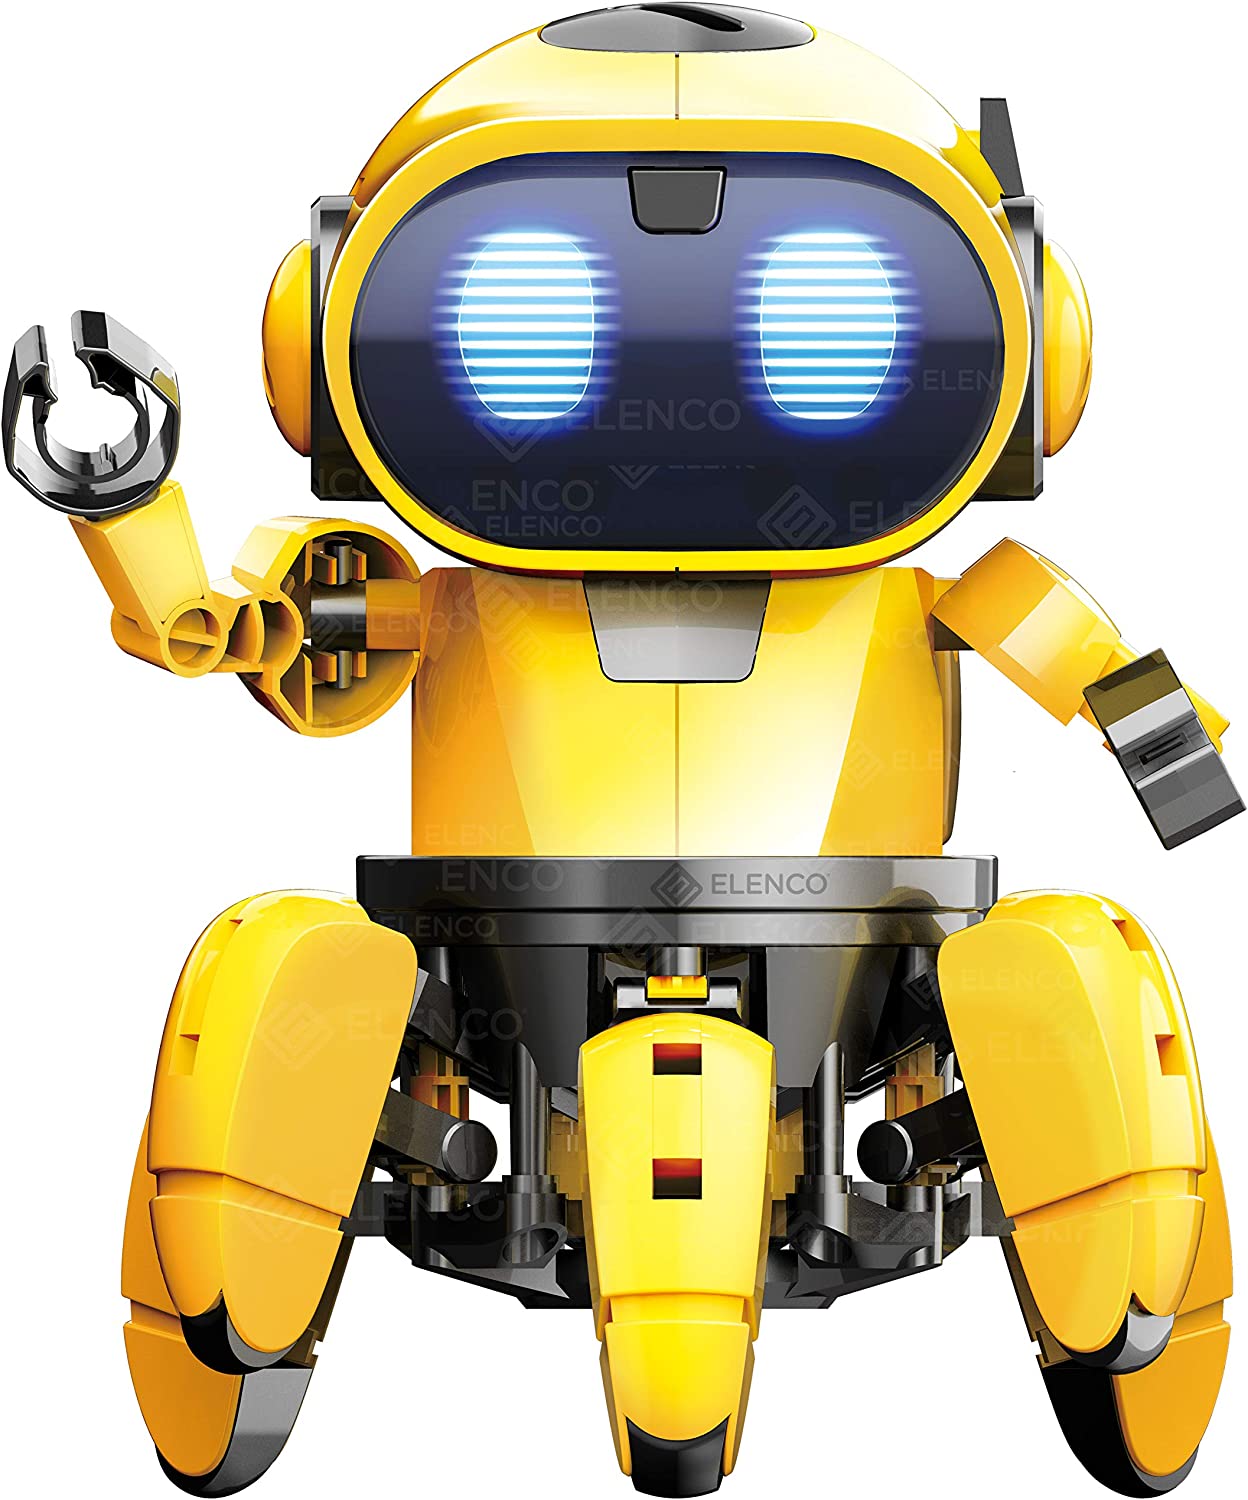 Elenco Teach Tech √É¬¢√¢‚Äö¬¨√Ö‚ÄúZivko The Robot√É¬¢√¢‚Äö¬¨√Ç¬ù, Interactive A/I Capable Robot with Infrared Sensor, STEM Learning Toys for Kids 10+